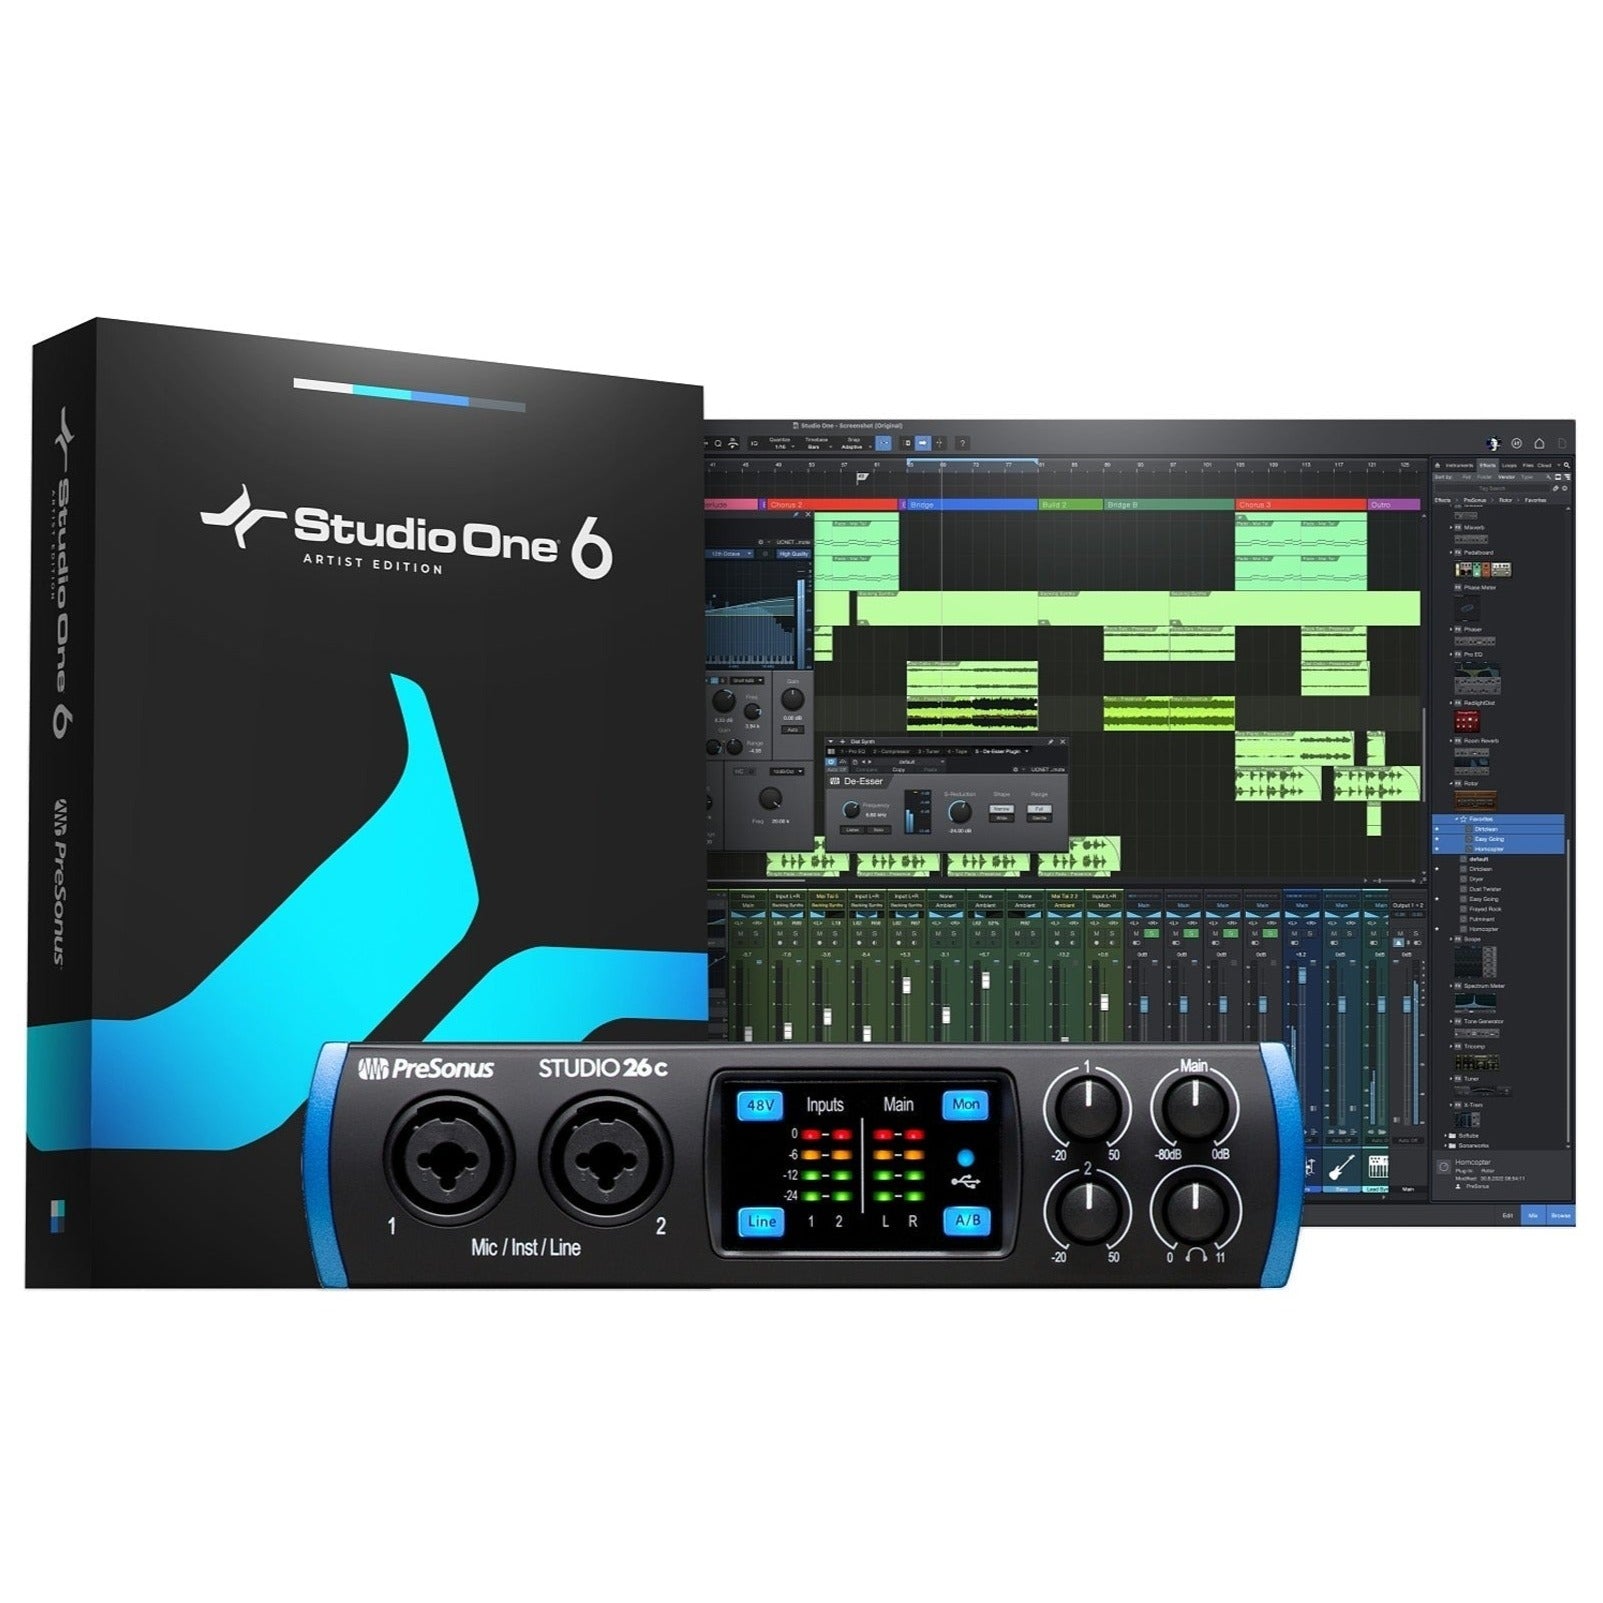 PreSonus Studio 26c USB-C Audio Interface